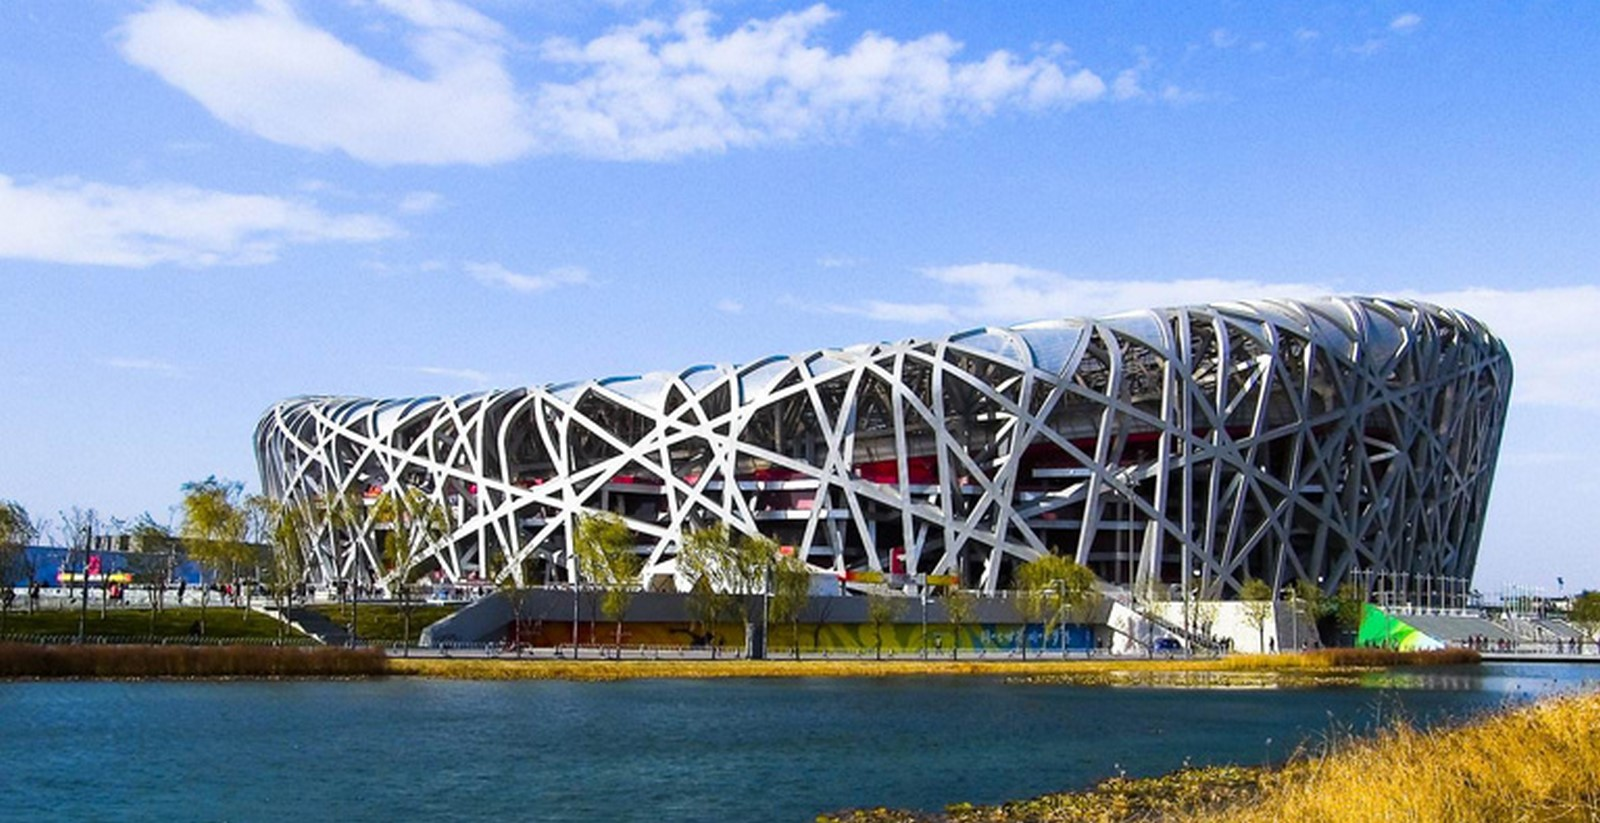  The Beijing National Stadium 